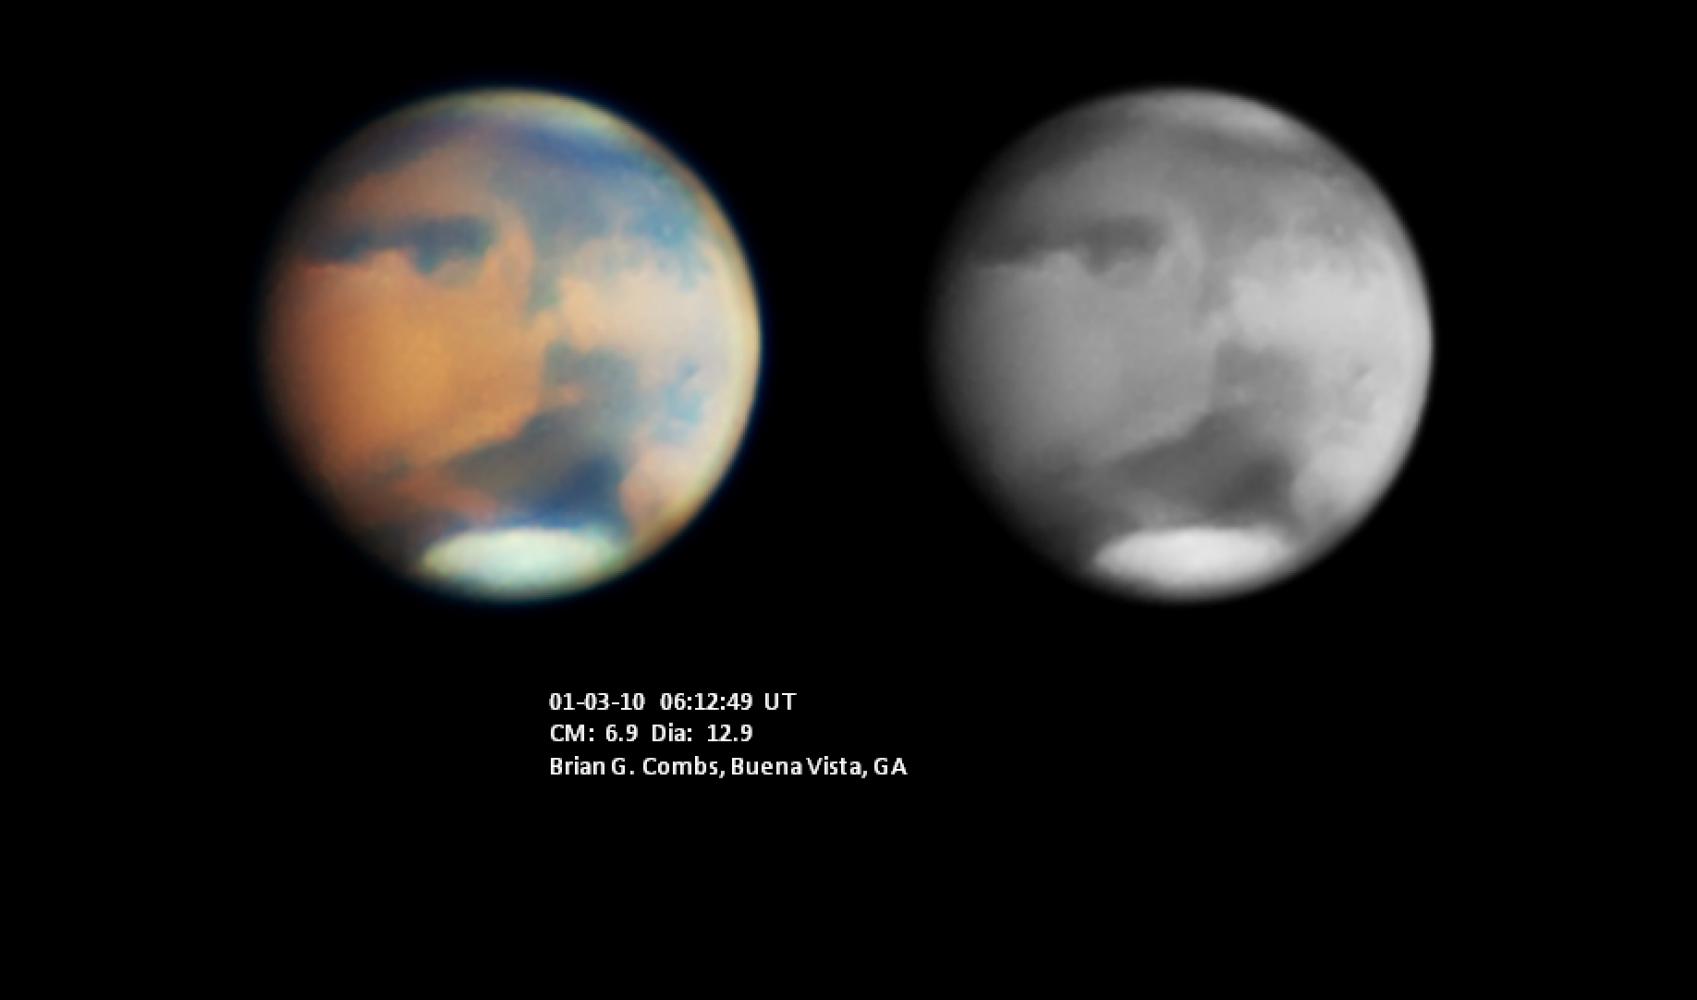 Mars-01-03-10